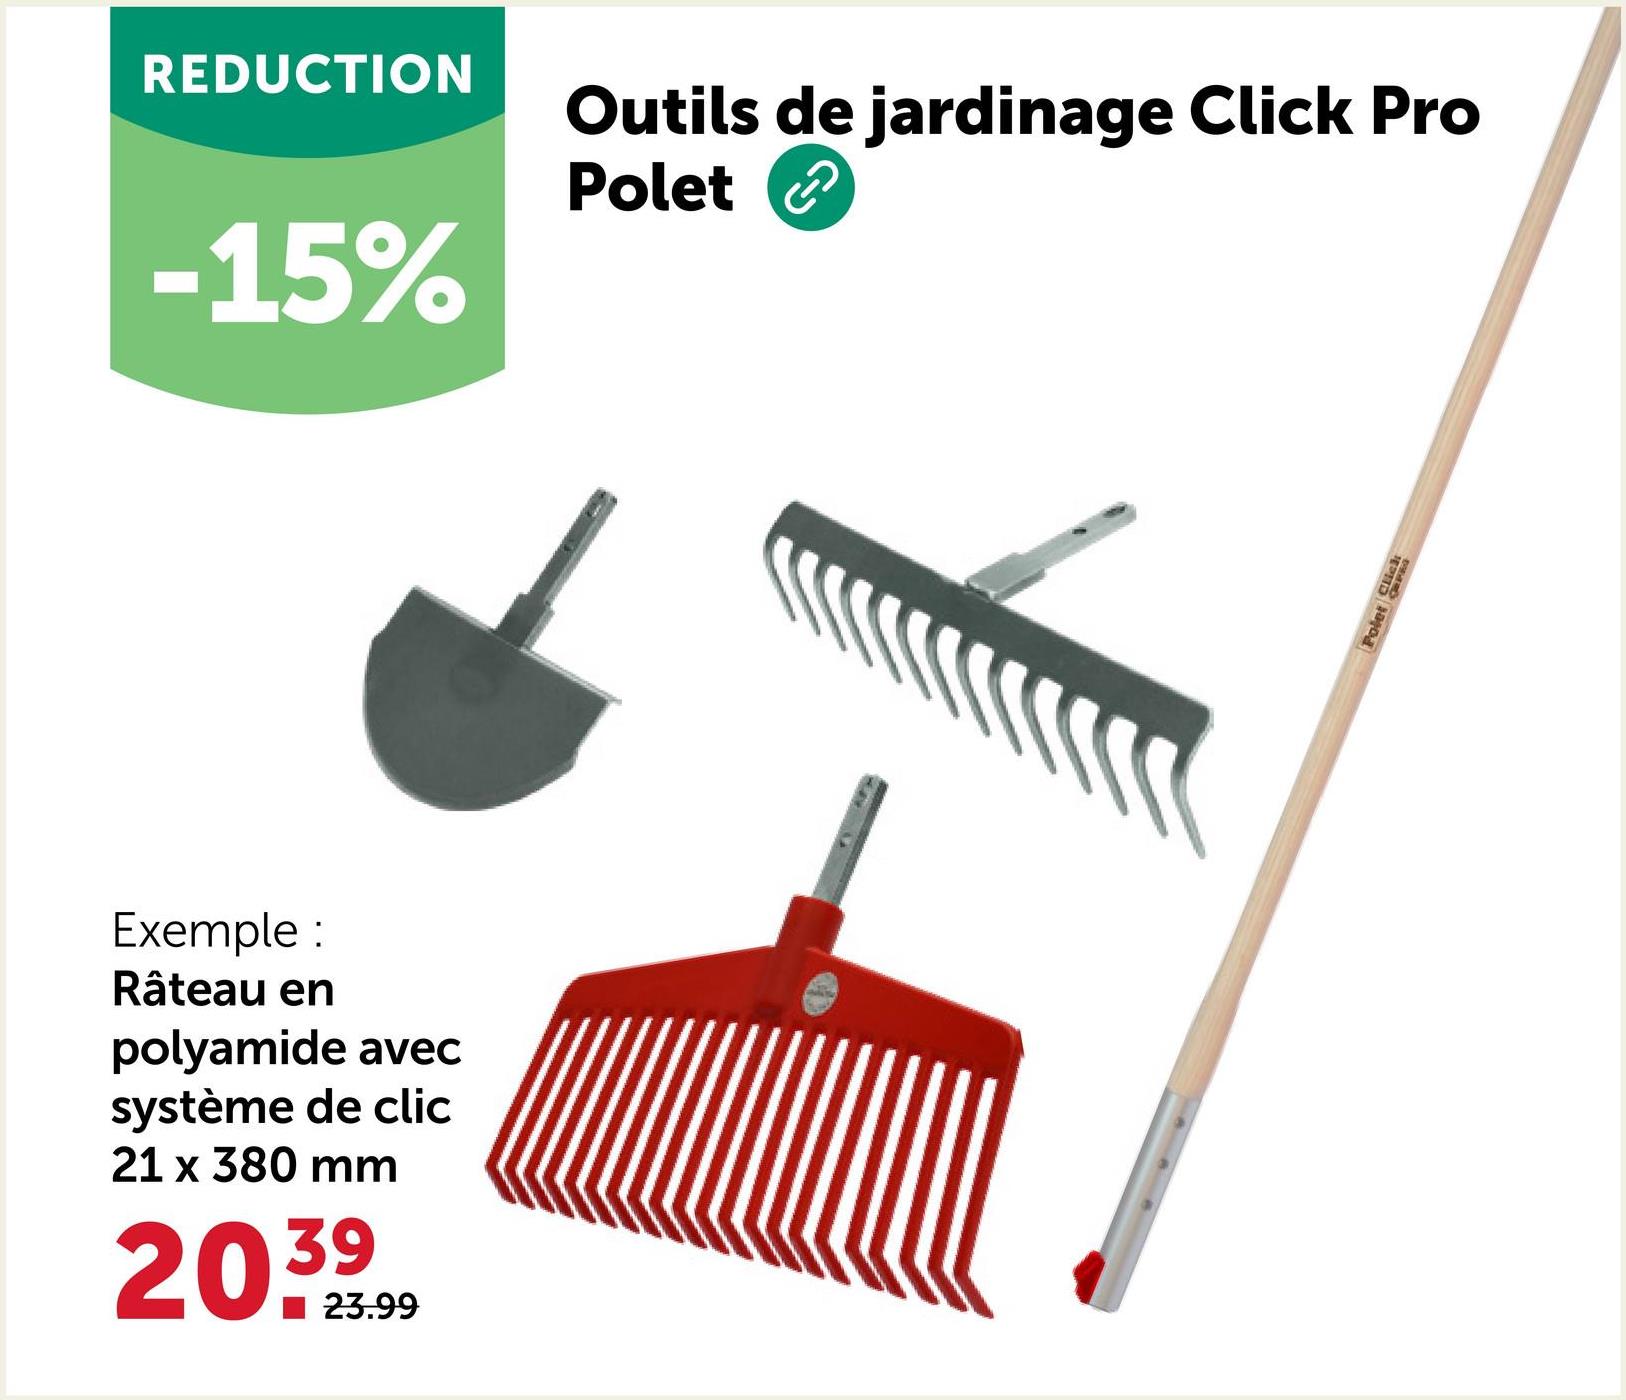 REDUCTION
-15%
Outils de jardinage Click Pro
Polet
Exemple:
Râteau en
polyamide avec
système de clic
21 x 380 mm
20.39
23.99
Polet Click